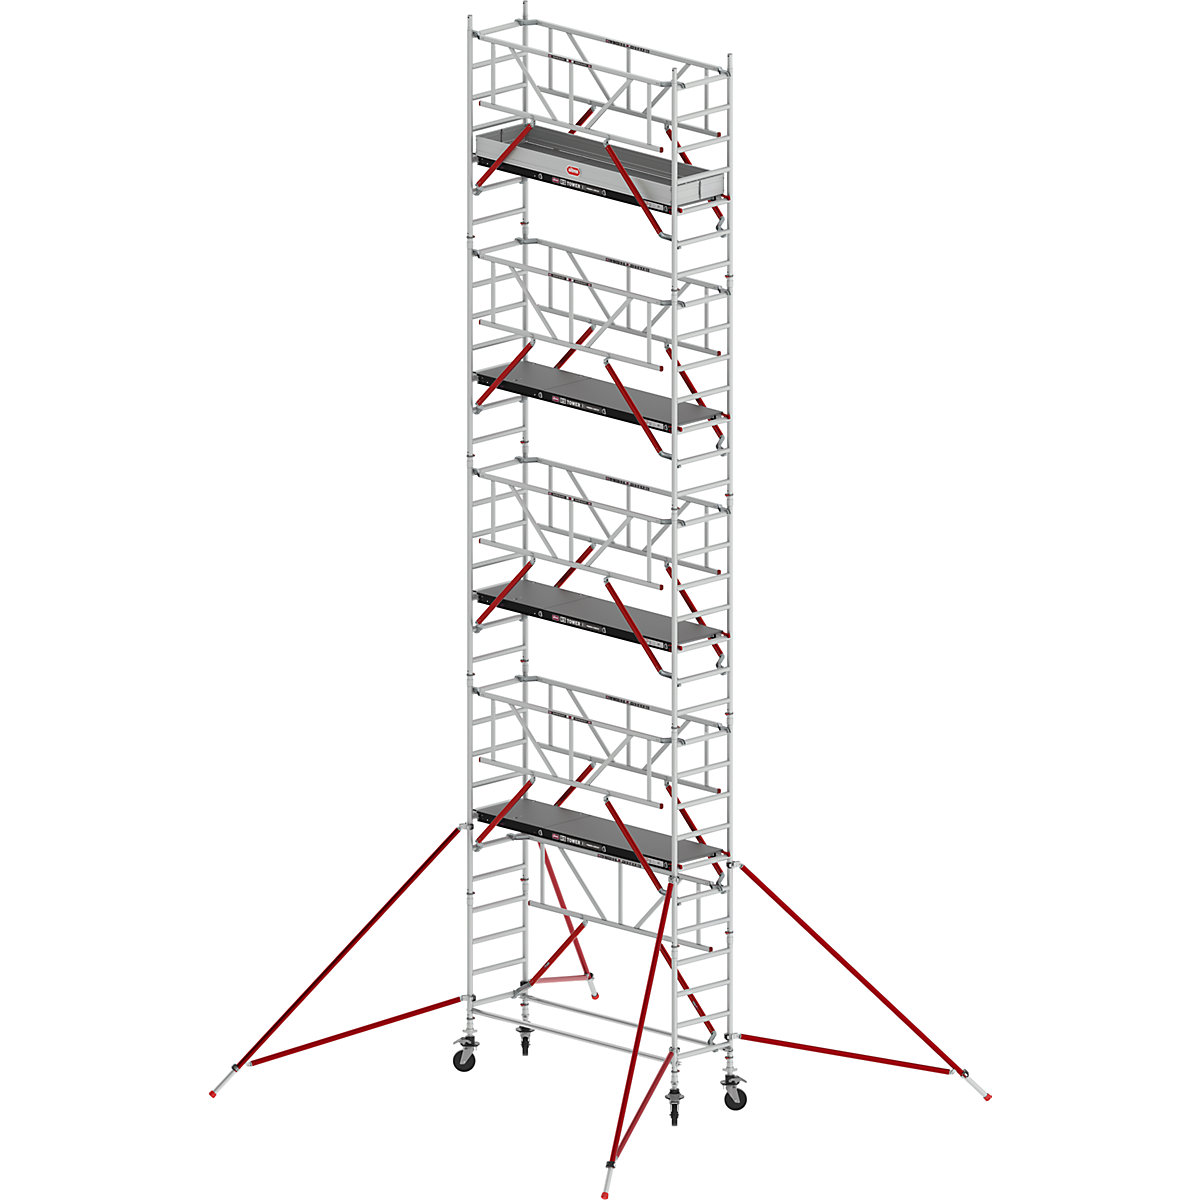 Pomičen oder RS TOWER 51, ozek – Altrex, ploščad Fiber-Deck®, dolžina 2,45 m, delovna višina 10,20 m